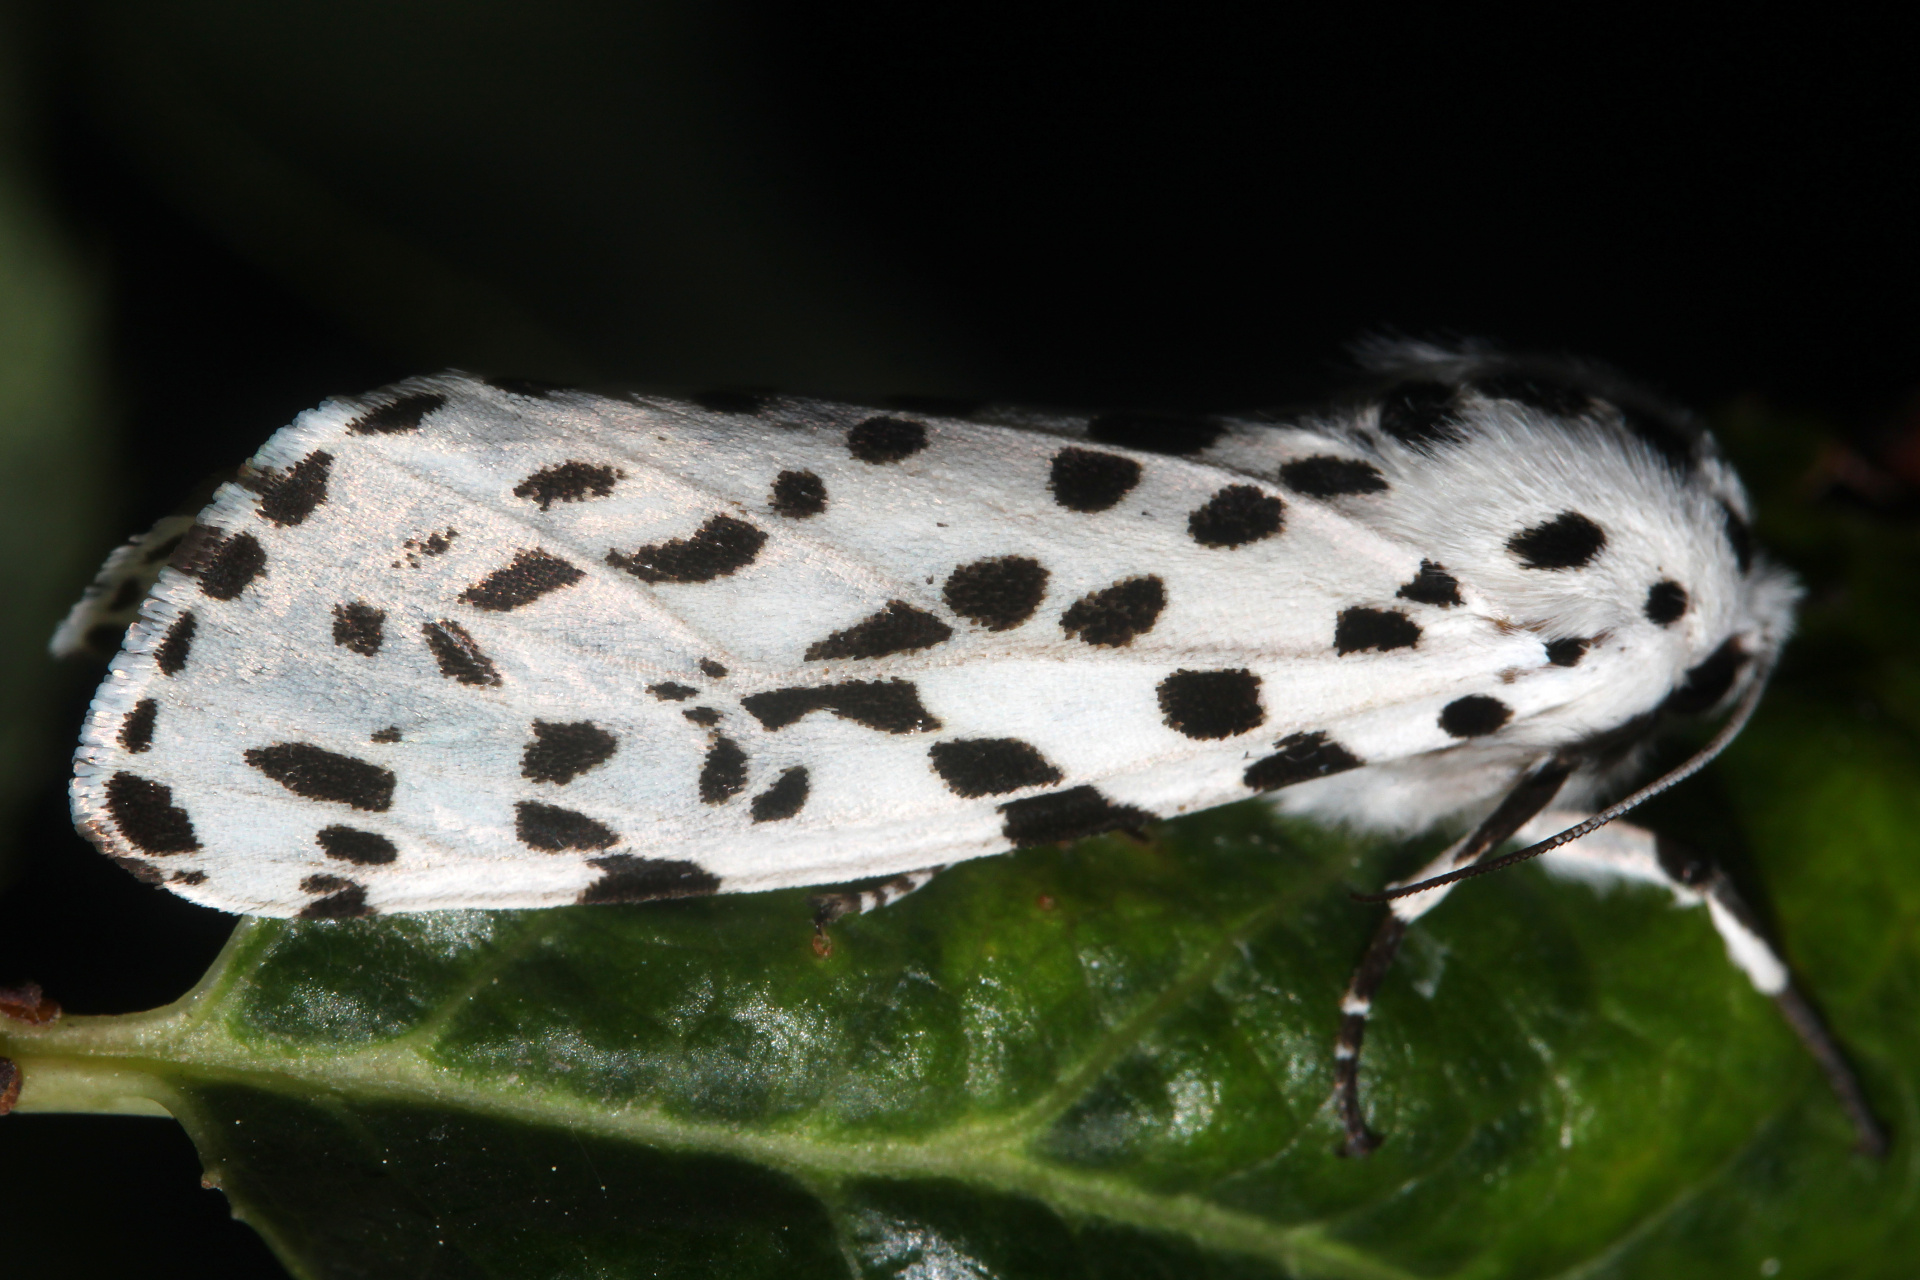 Hypercompe permaculata (Podróże » USA: Drogi nie obrane » Zwierzęta » Owady » Motyle i ćmy » Arctiidae)